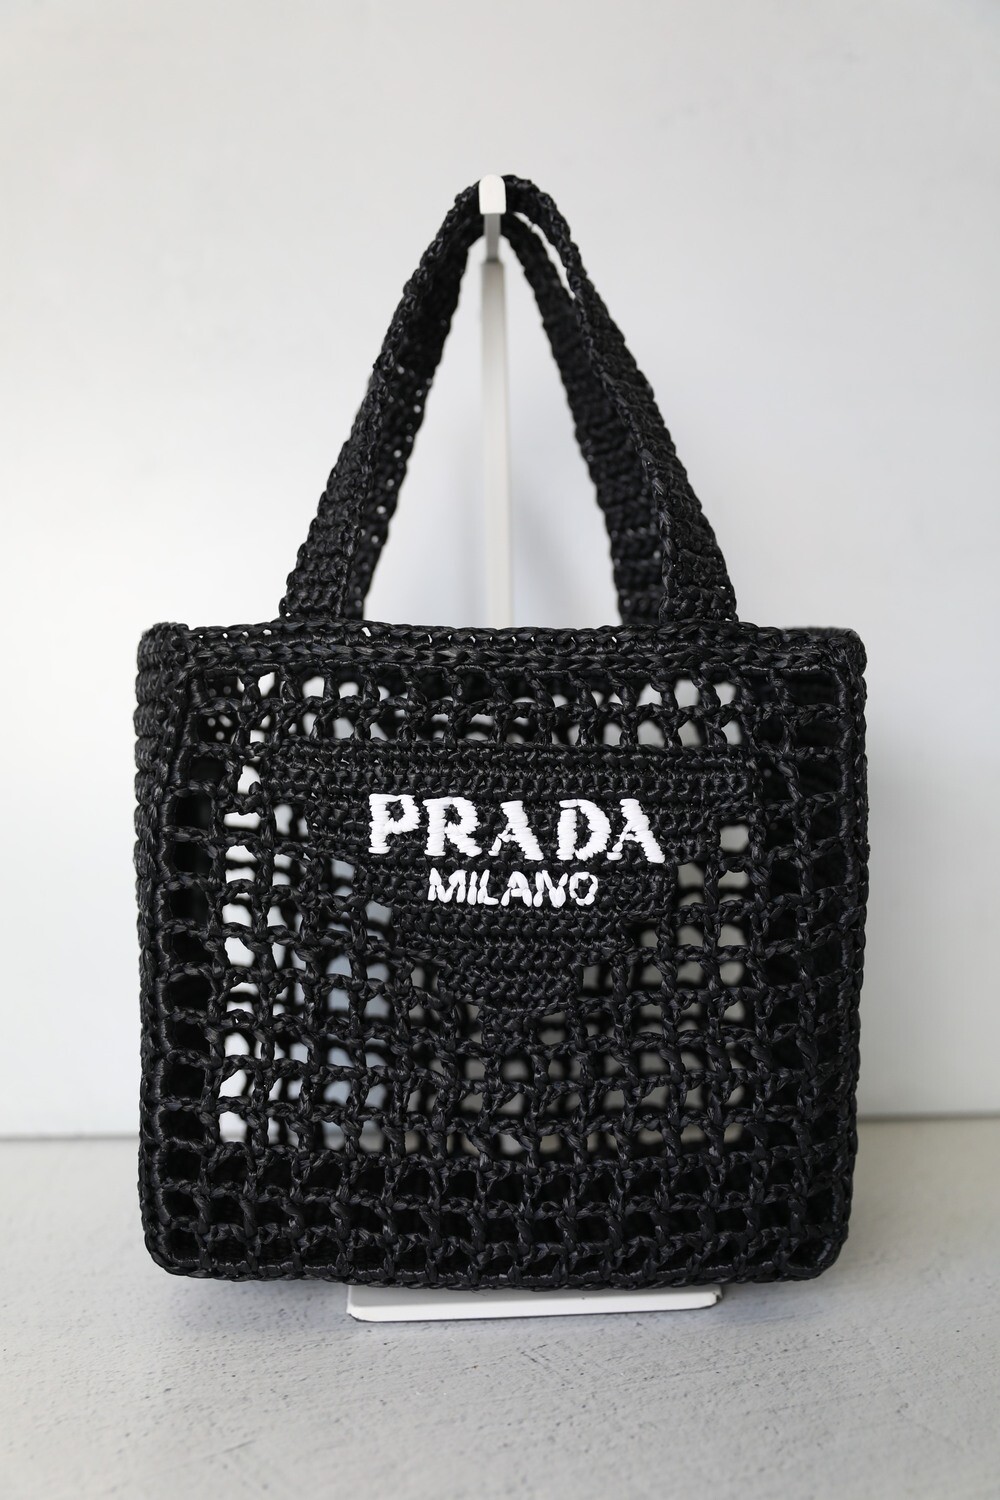 Prada Open Weave Raffia Straw Bag Small, Black, New in Dustbag WA001 ...